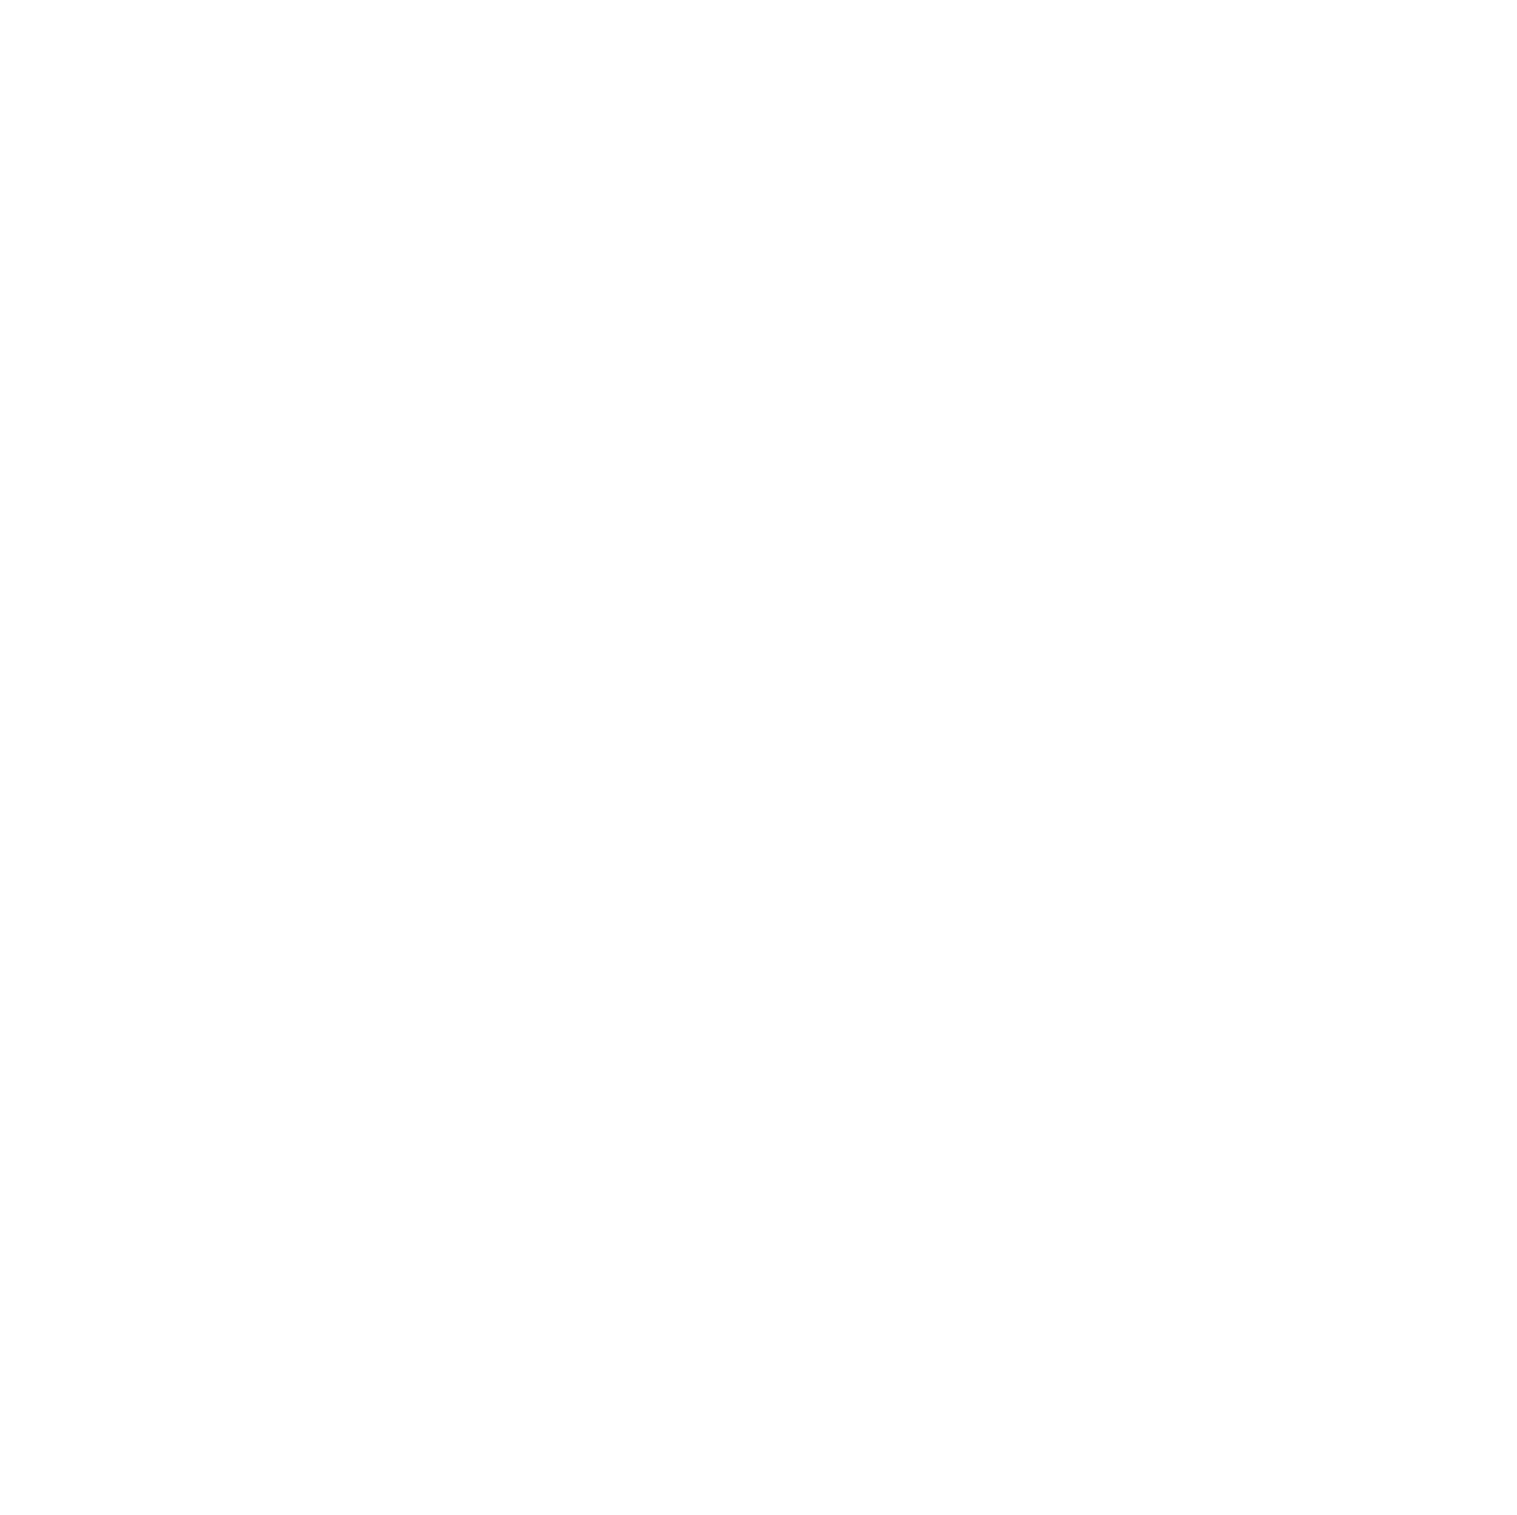 Stantec logo pour fonds sombres (PNG transparent)